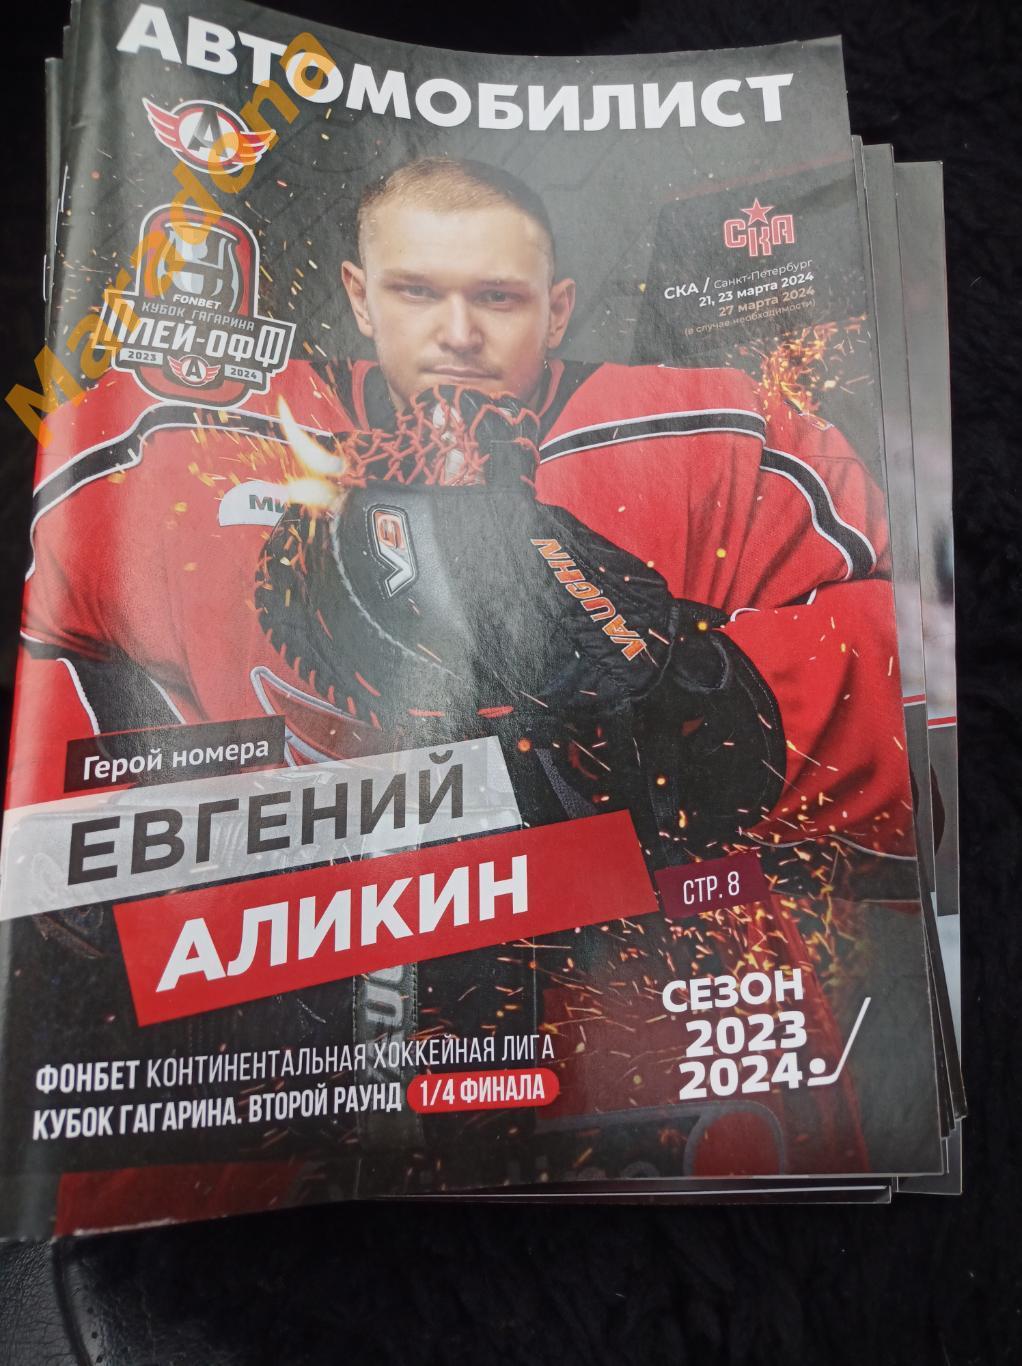 *Автомобилист Екатеринбург - СКА Санкт-Петербург 2024 Плей-офф